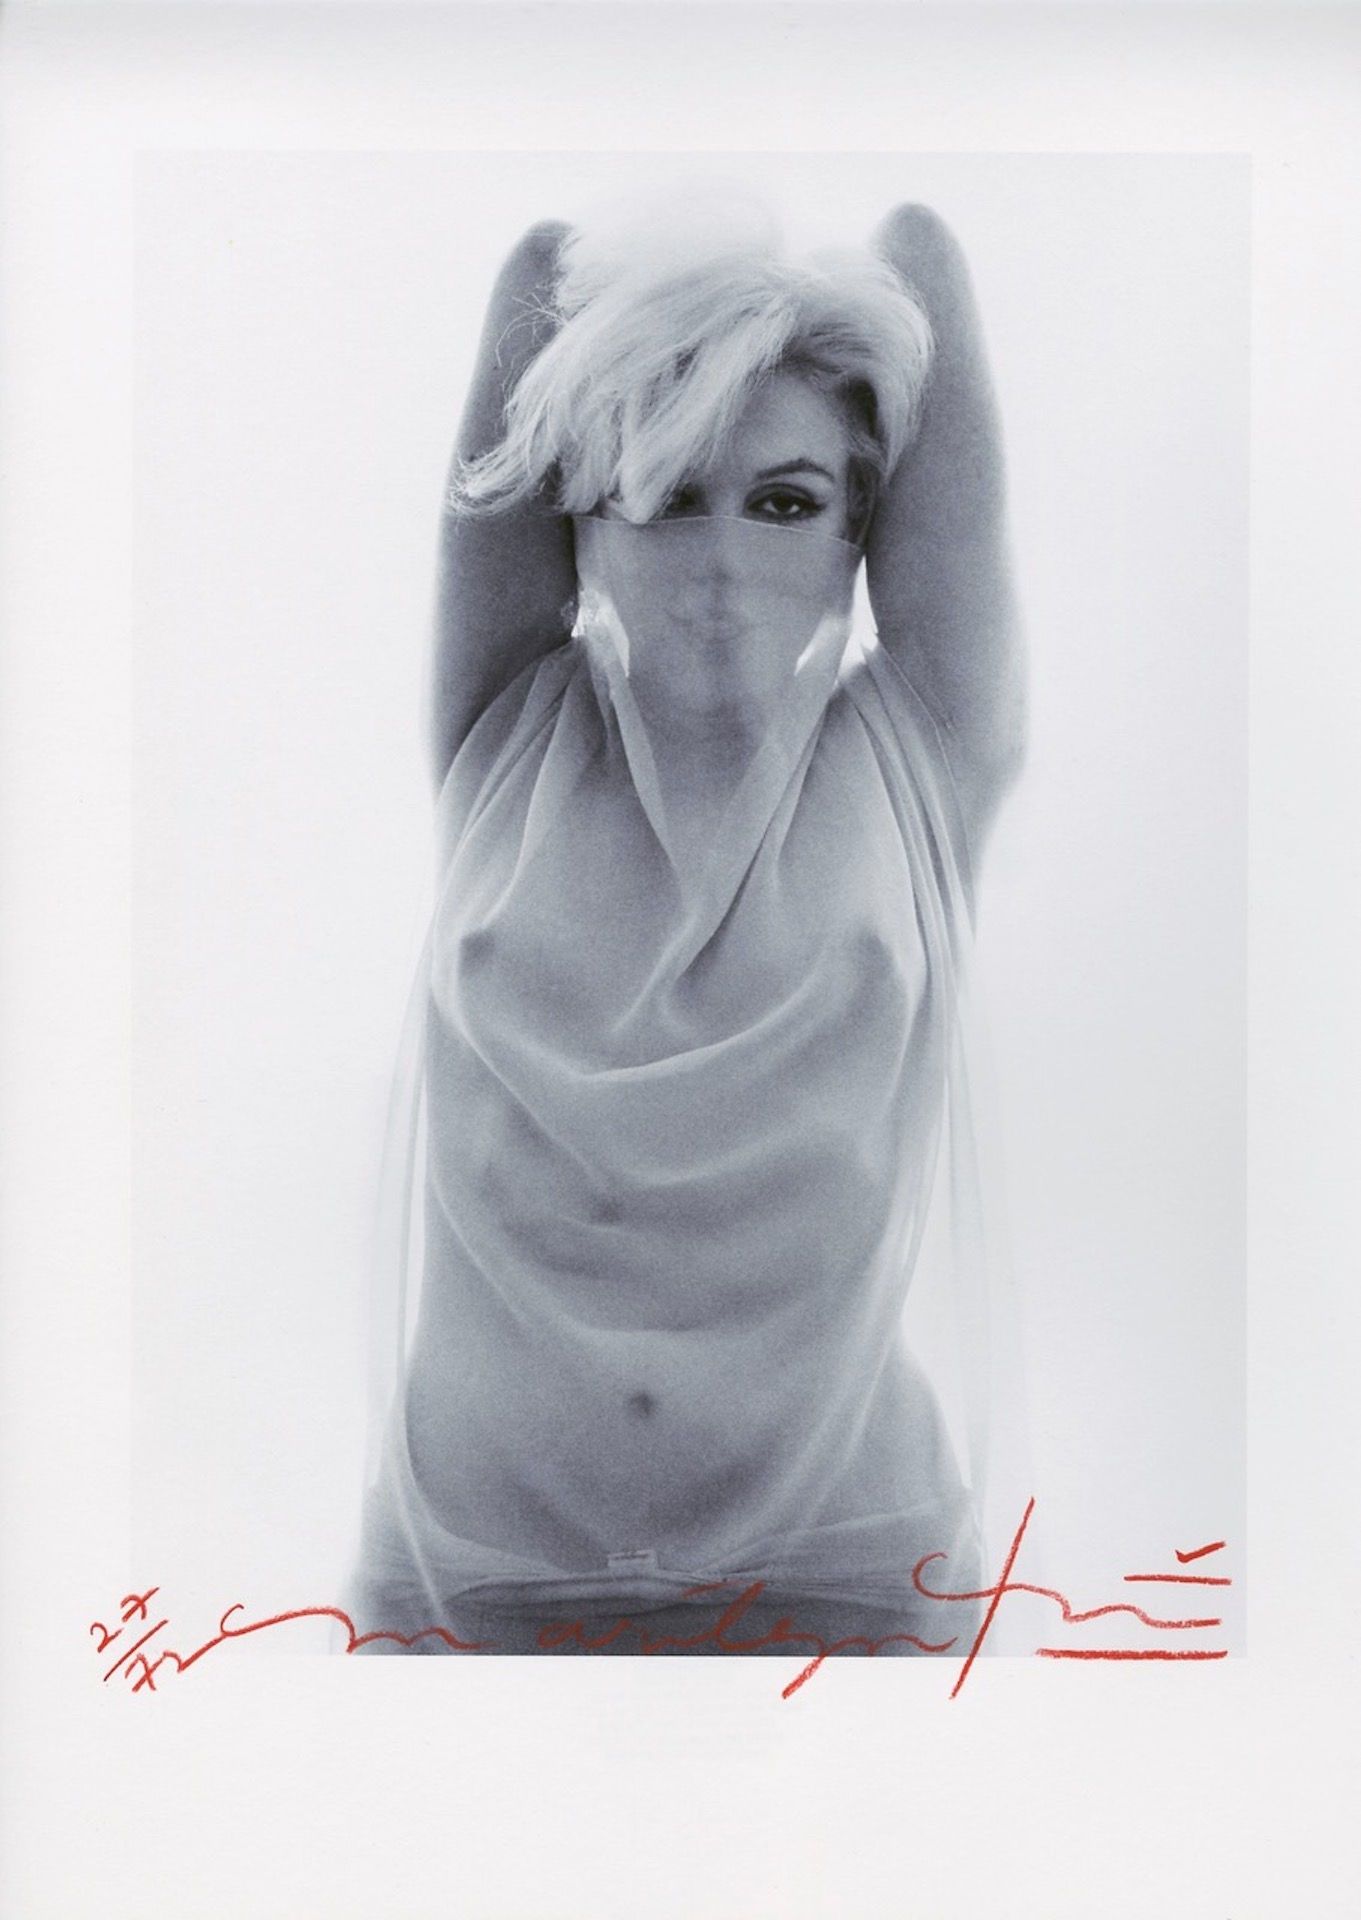 Bert STERN Bert Stern

Marilyn Arabian, 2011

Druck auf Fotopapier

Inkjet-Verfa&hellip;